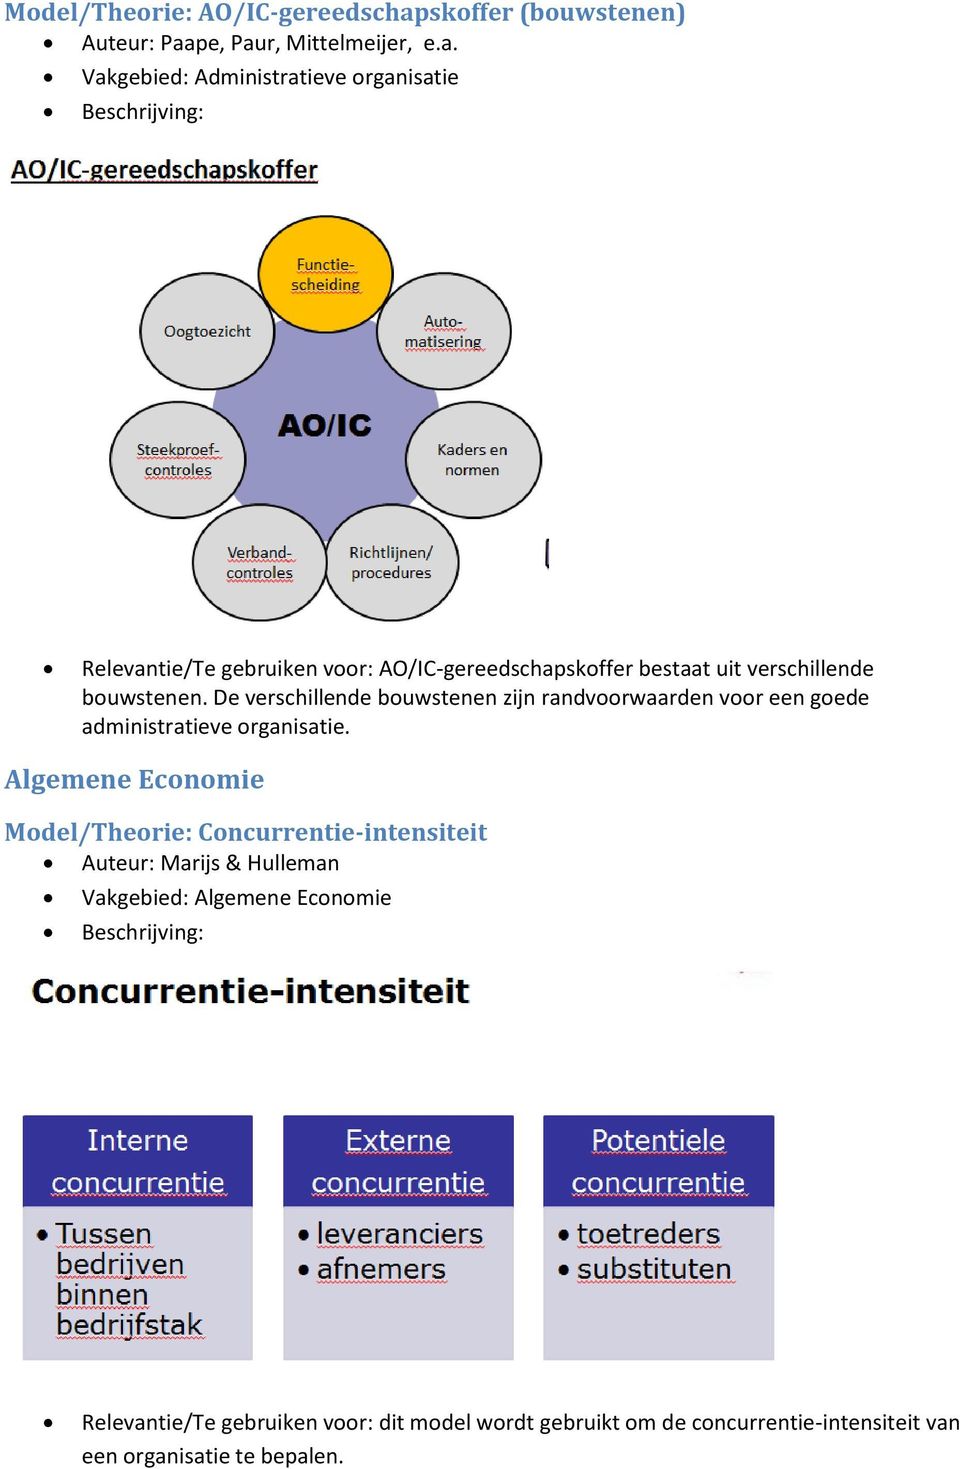 Algemene Economie Model/Theorie: Concurrentie-intensiteit Auteur: Marijs & Hulleman Vakgebied: Algemene Economie Relevantie/Te